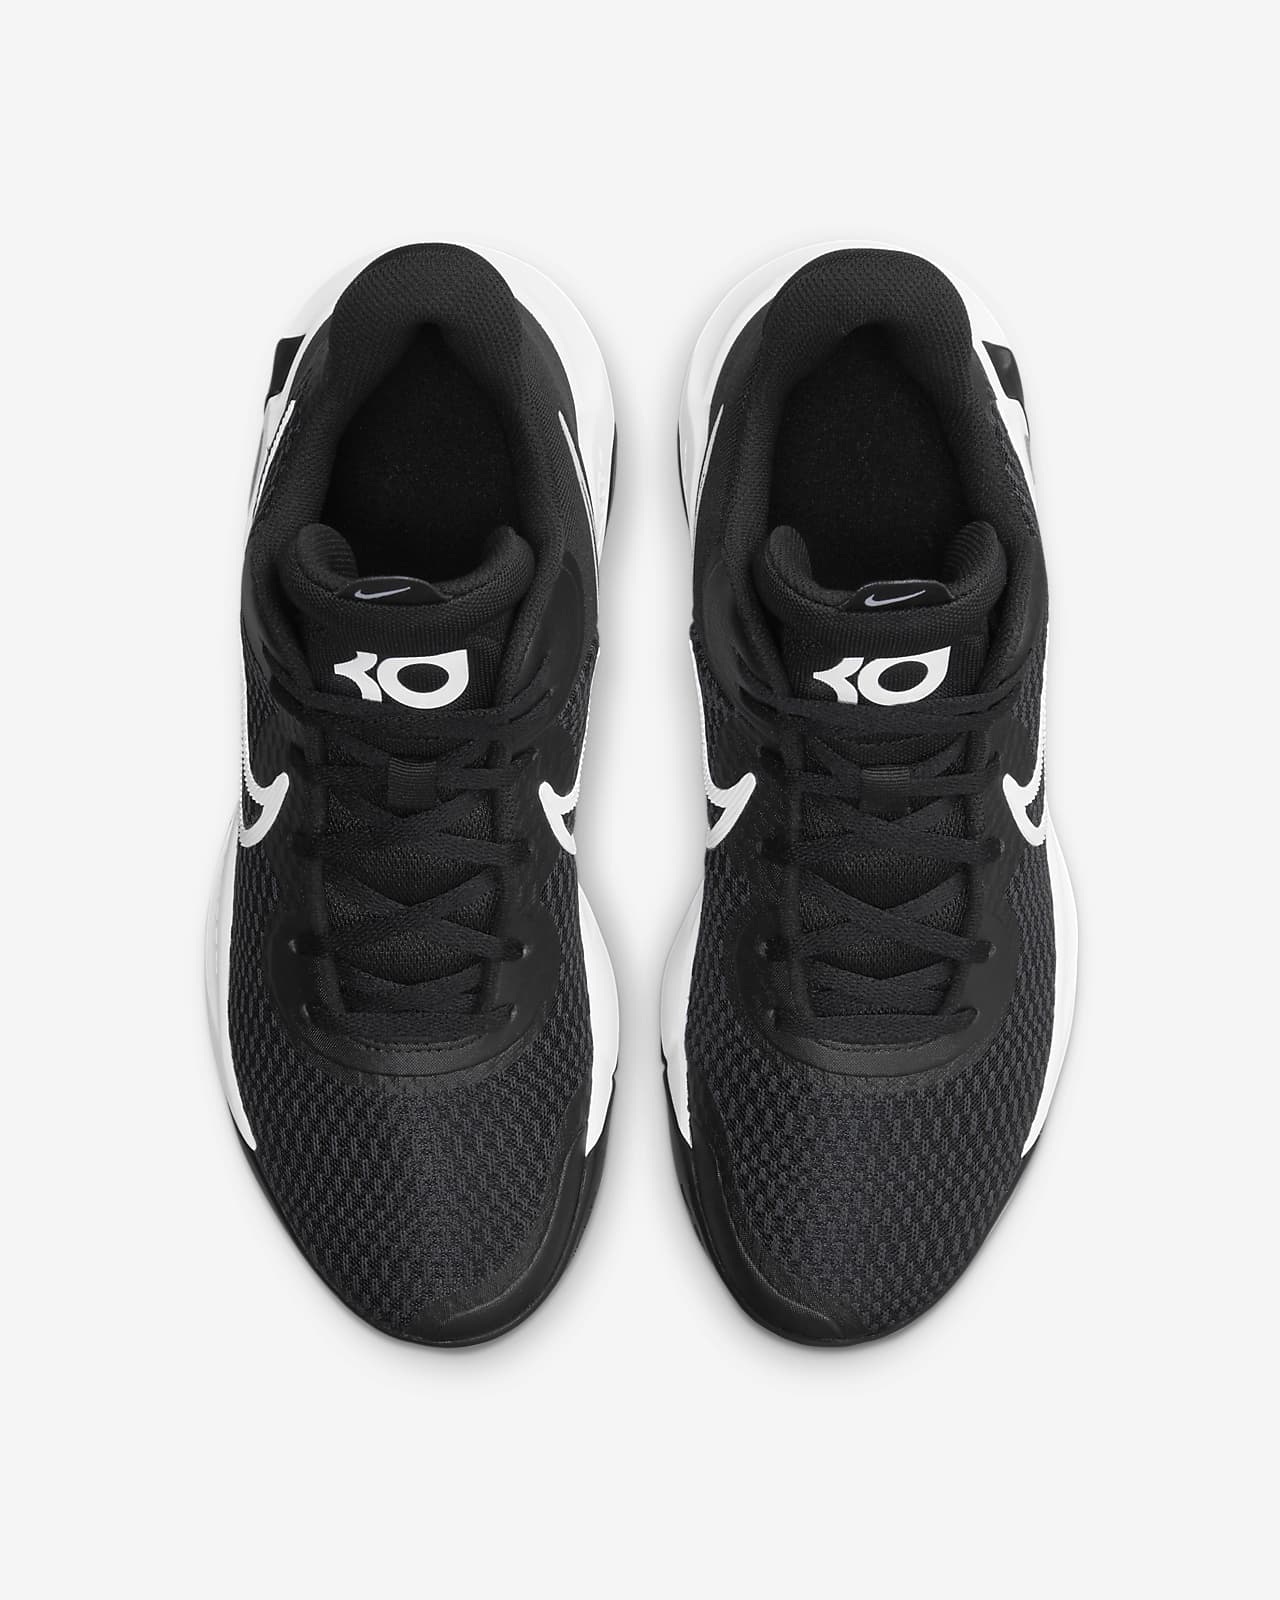 KD Trey 5 IX Basketball Shoes. Nike.com